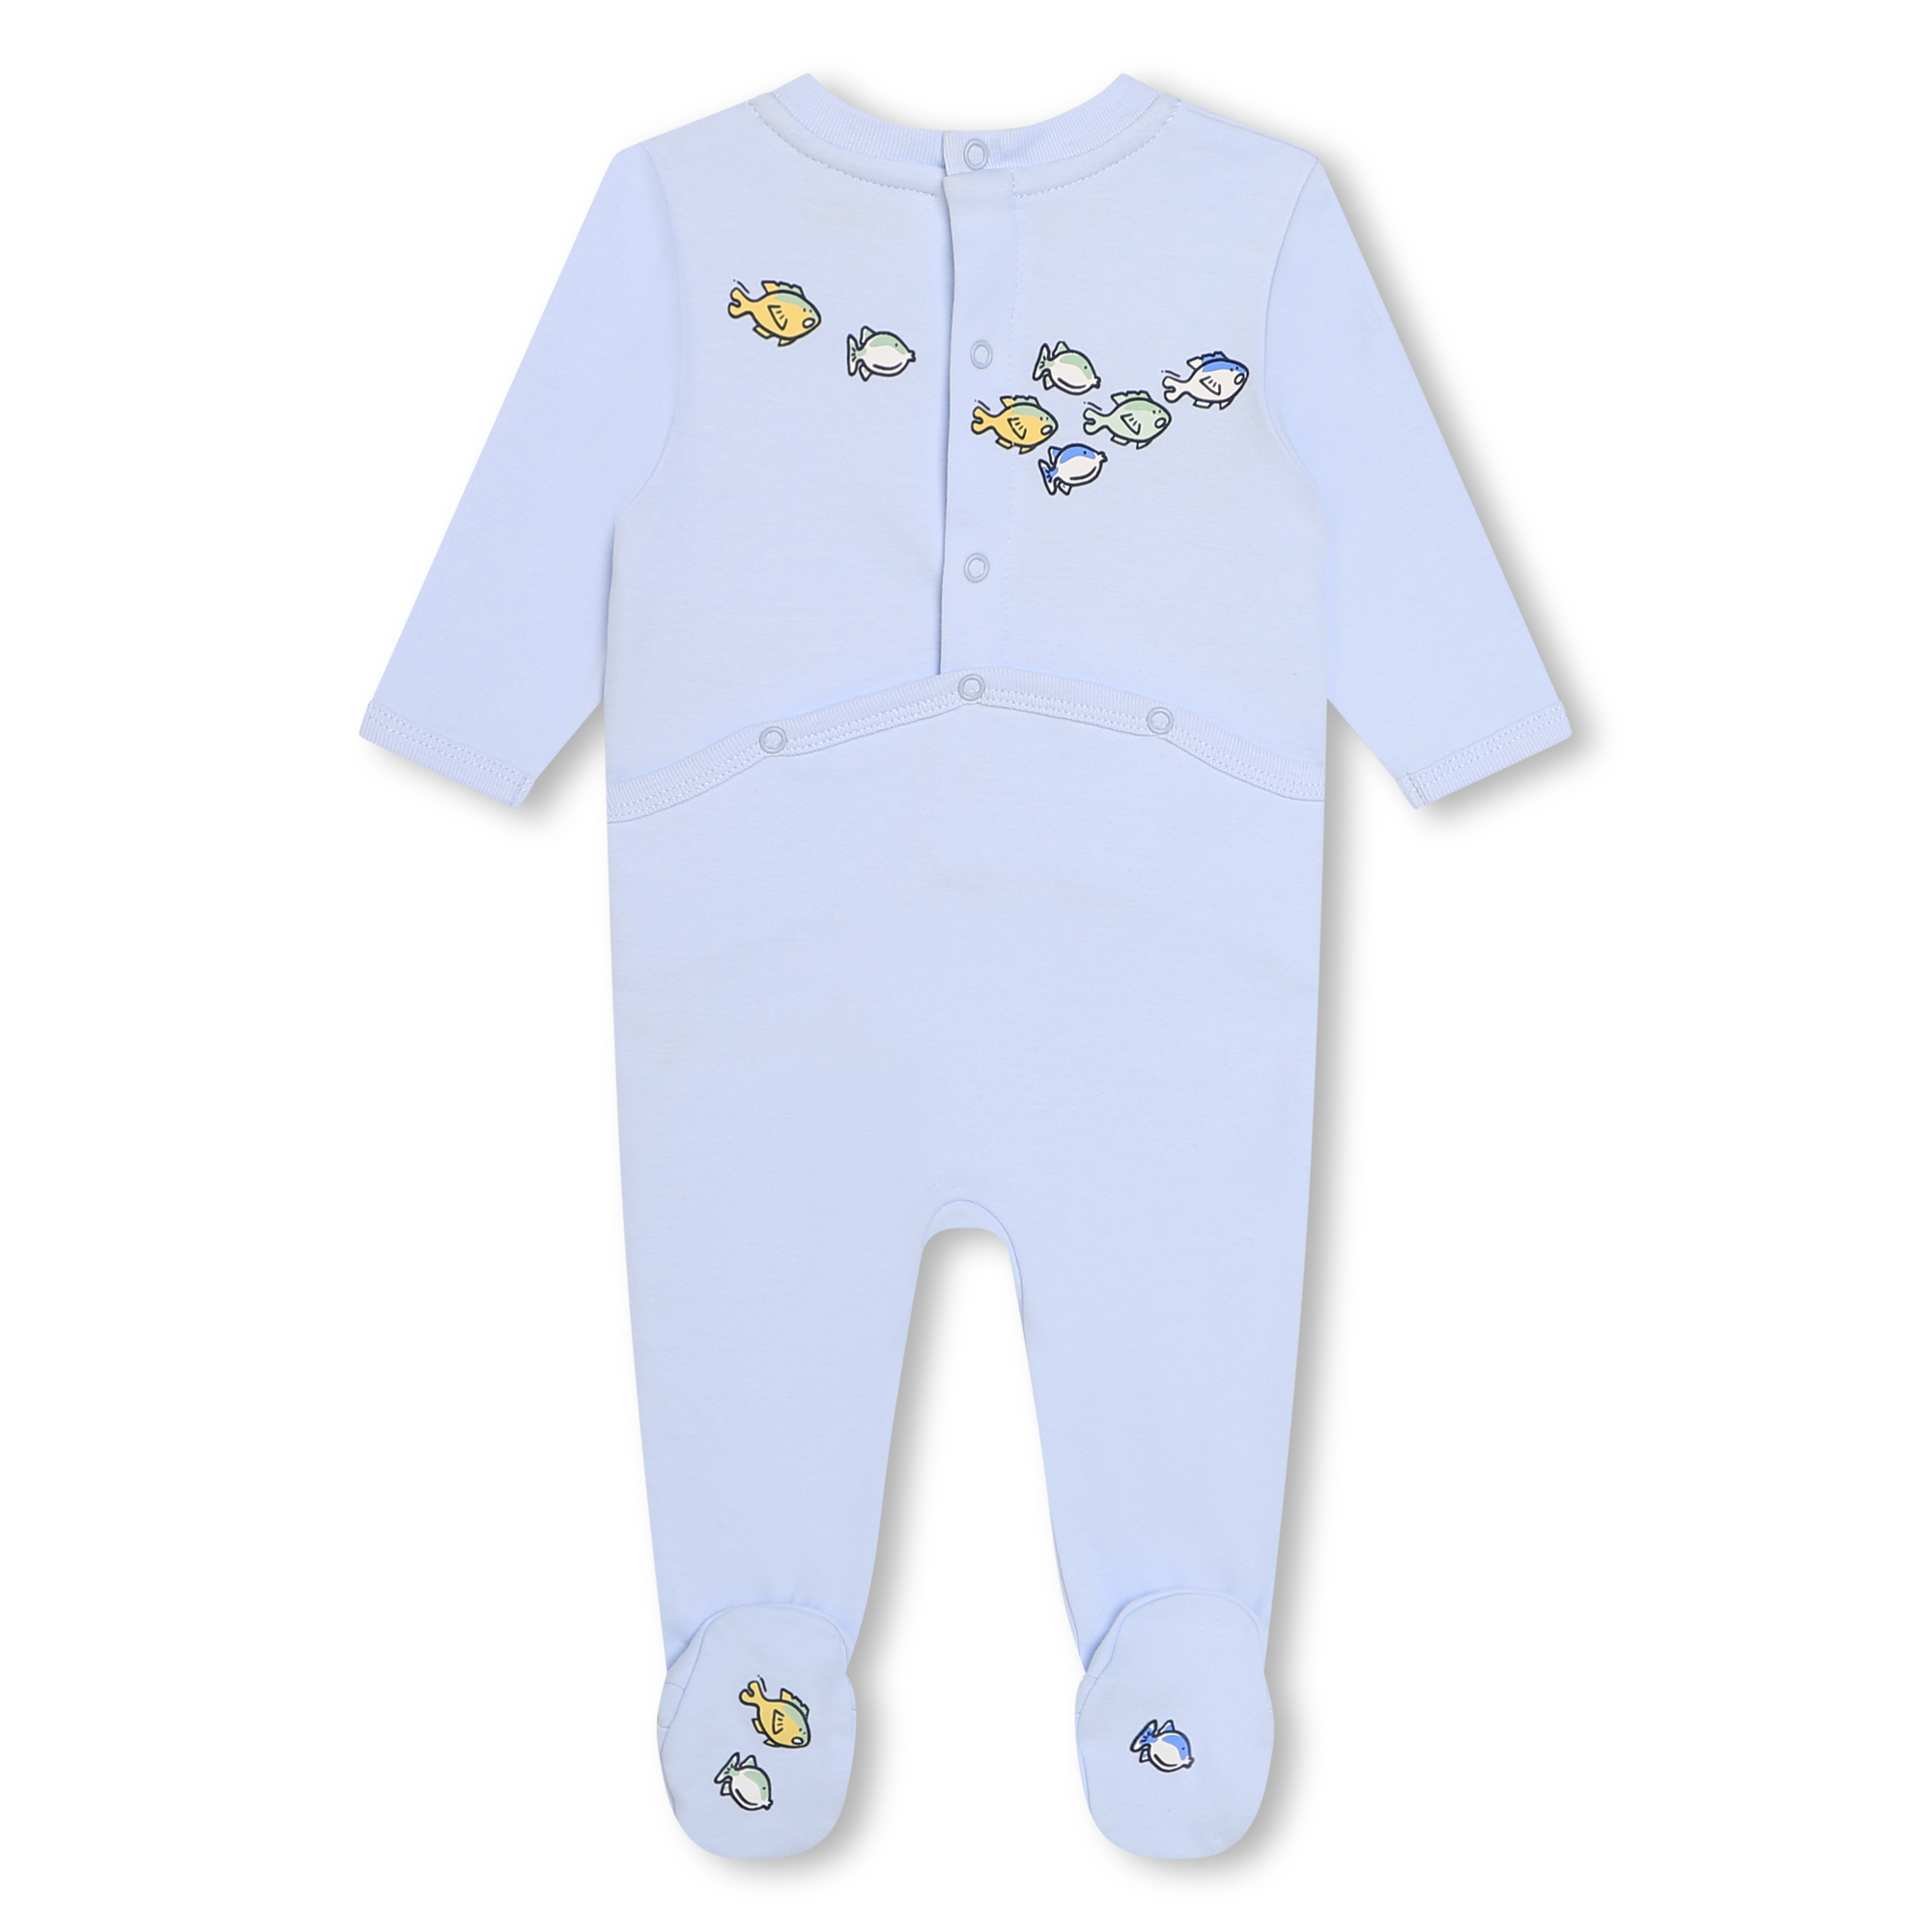 Pyjama mit Printmotiven KENZO KIDS Für JUNGE